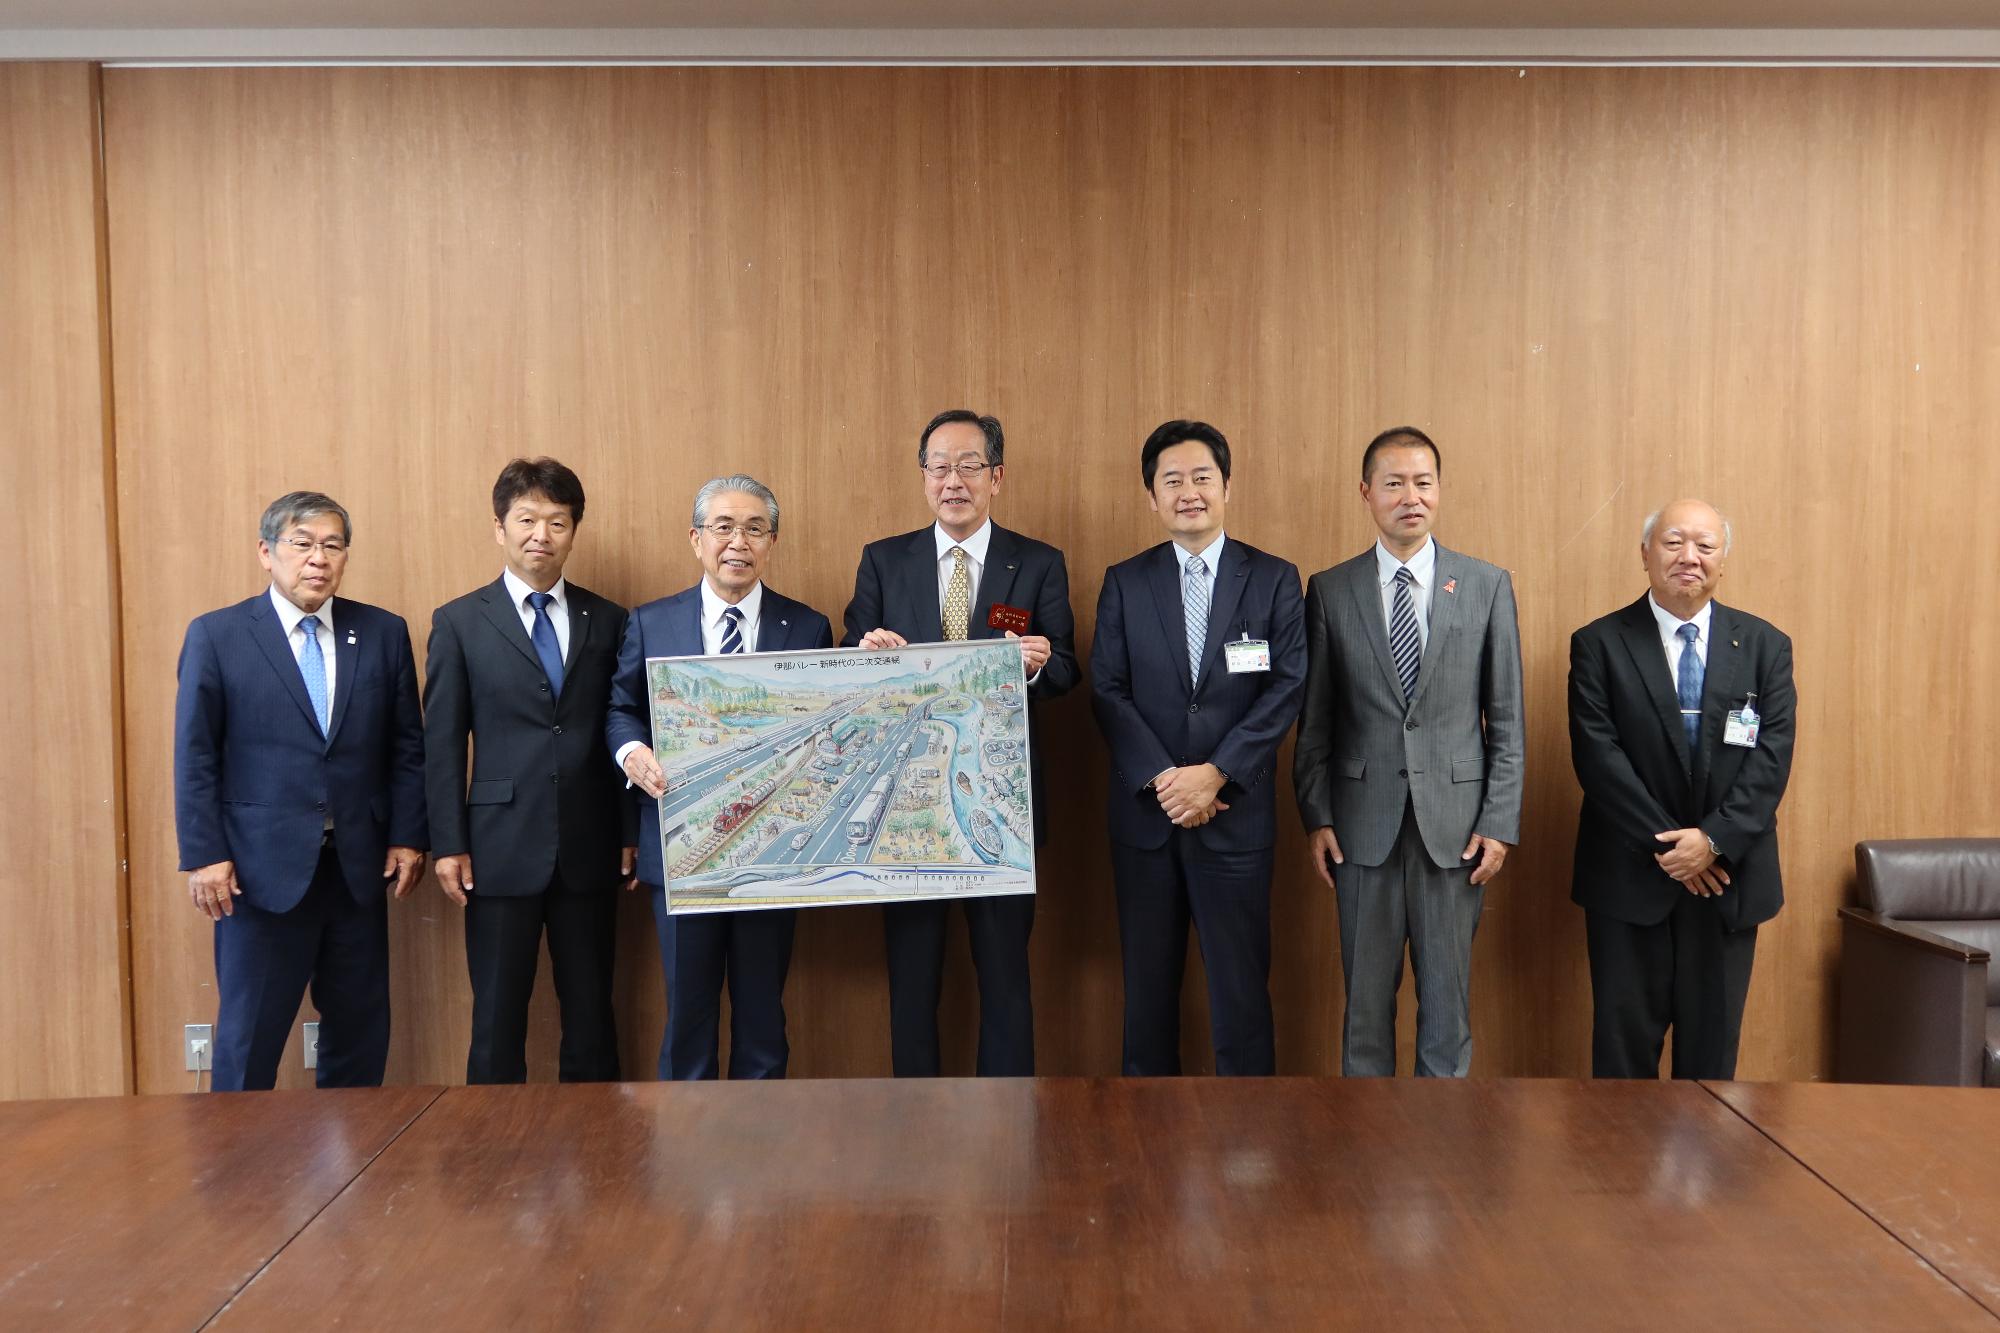 長野県関副知事に新時代の二次交通網のビジョンを贈呈